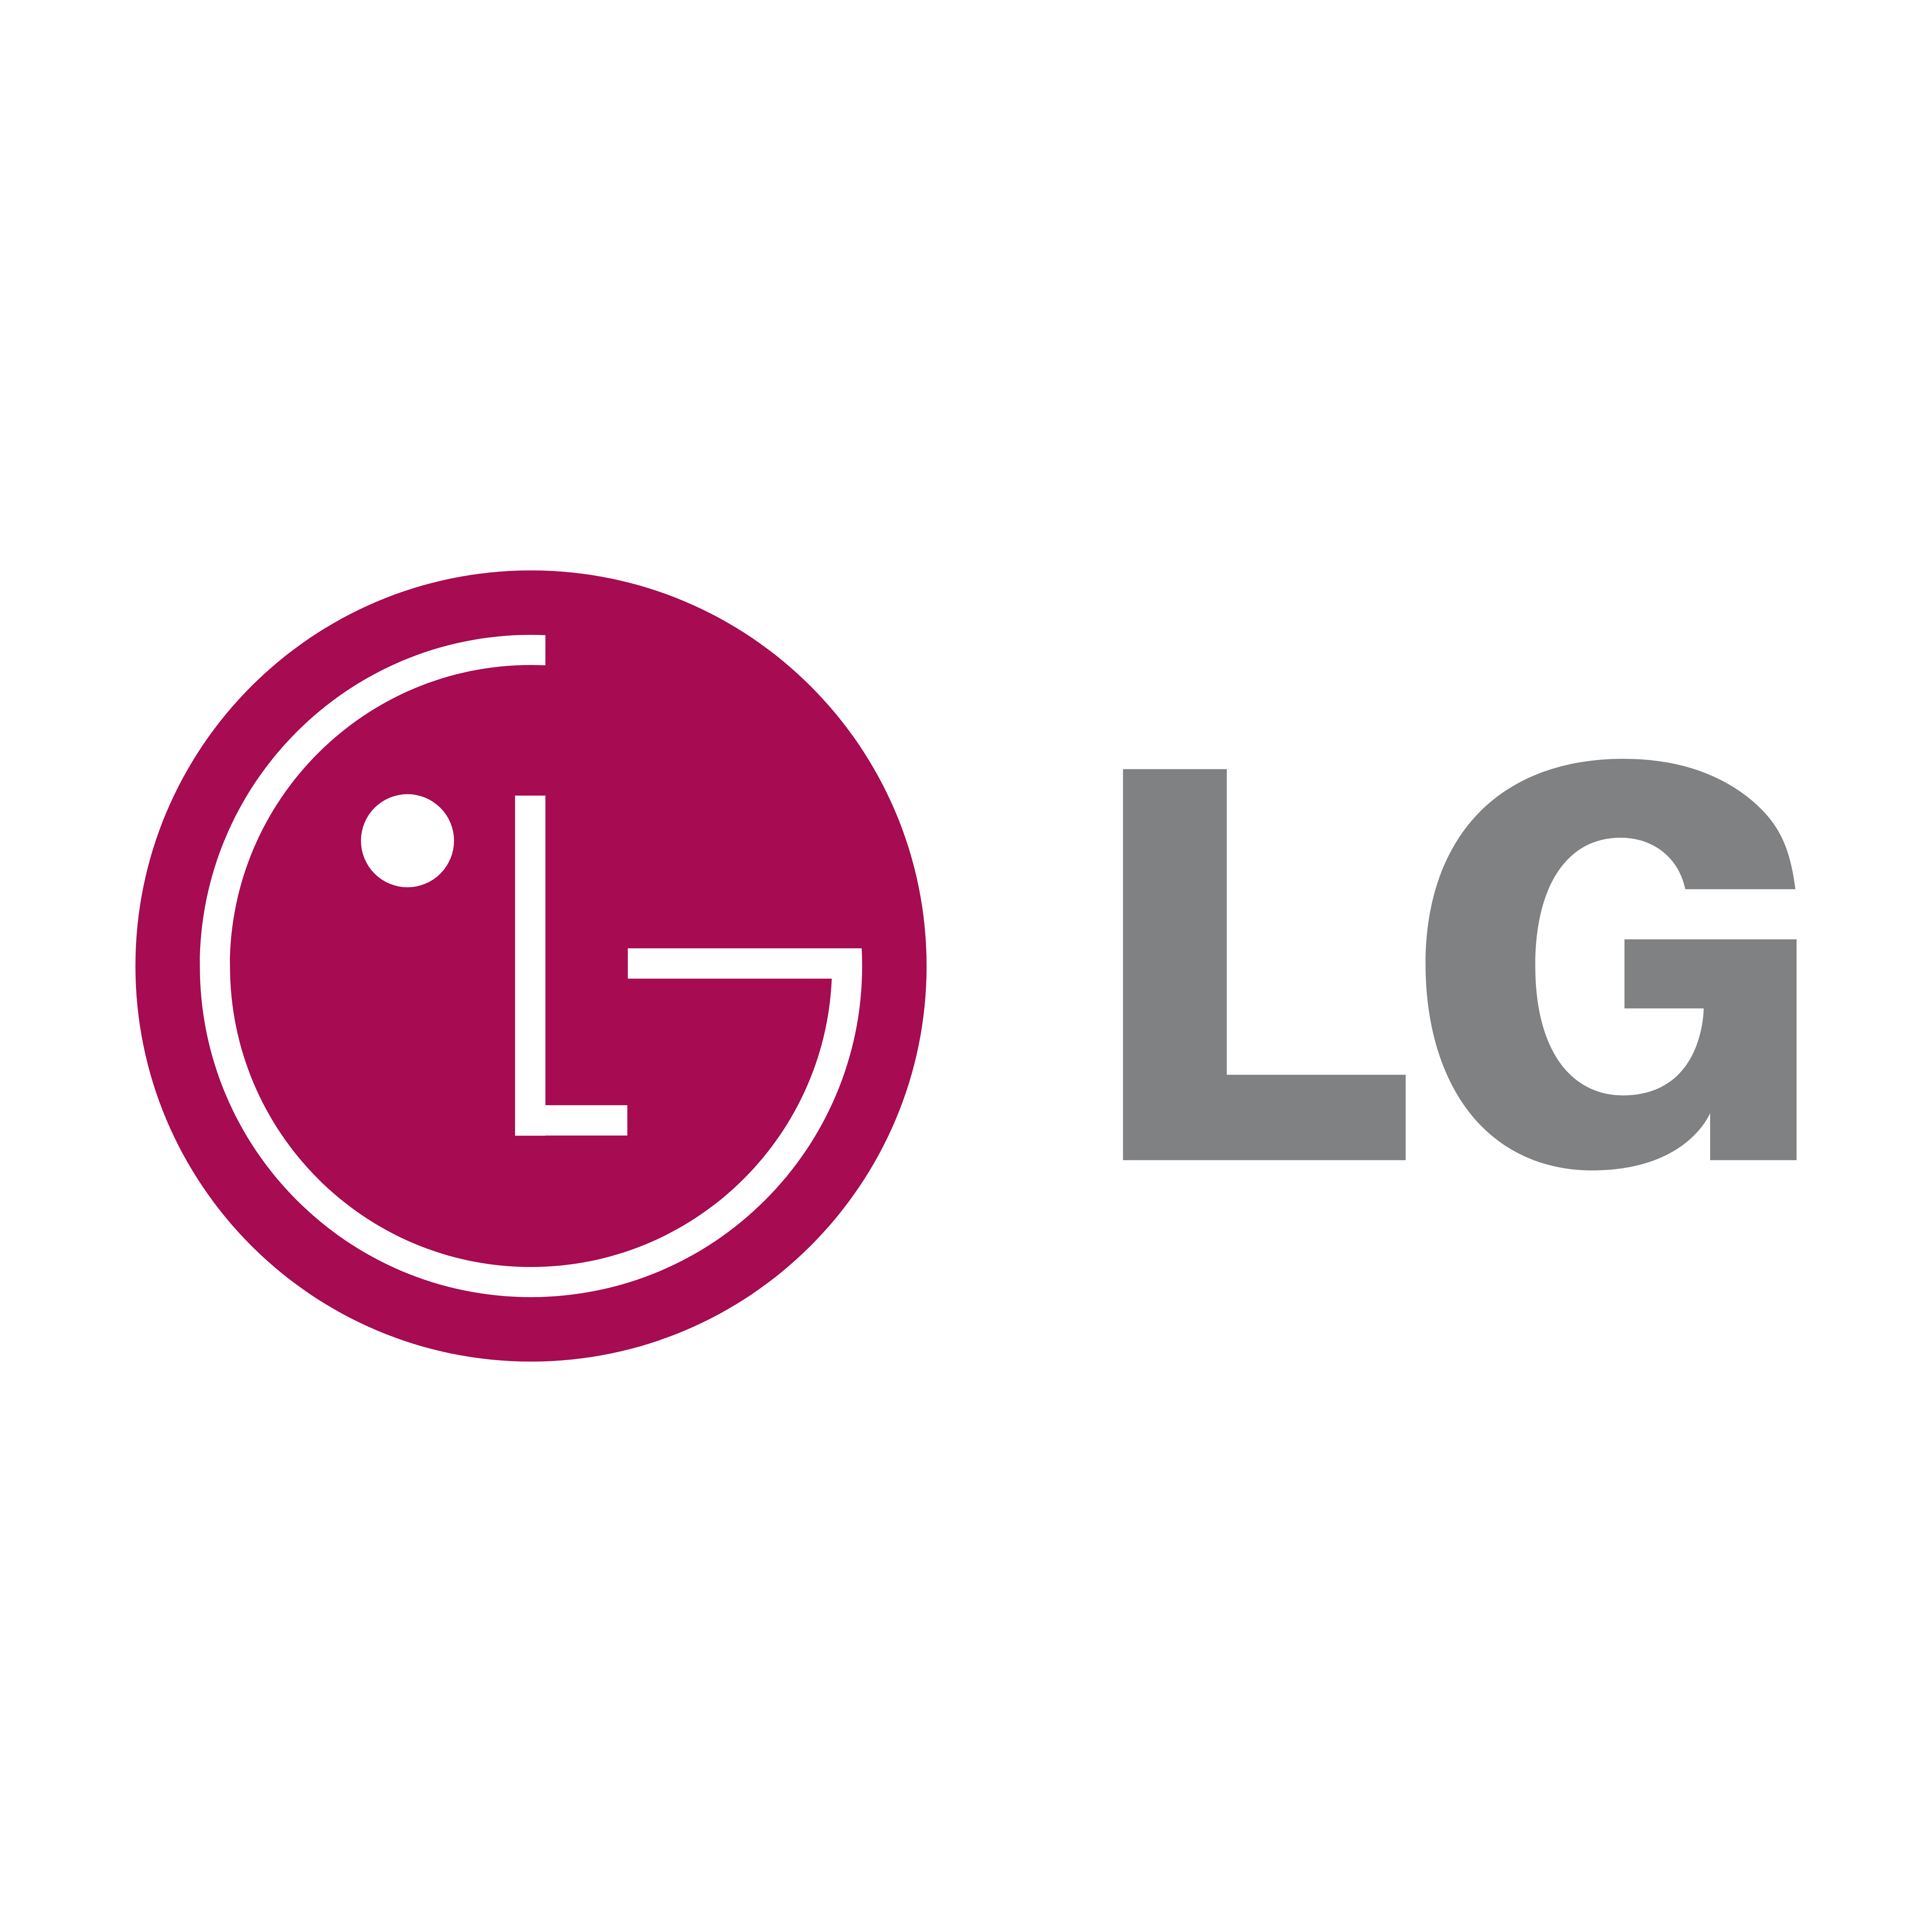 LG Logo - LG – Logos Download